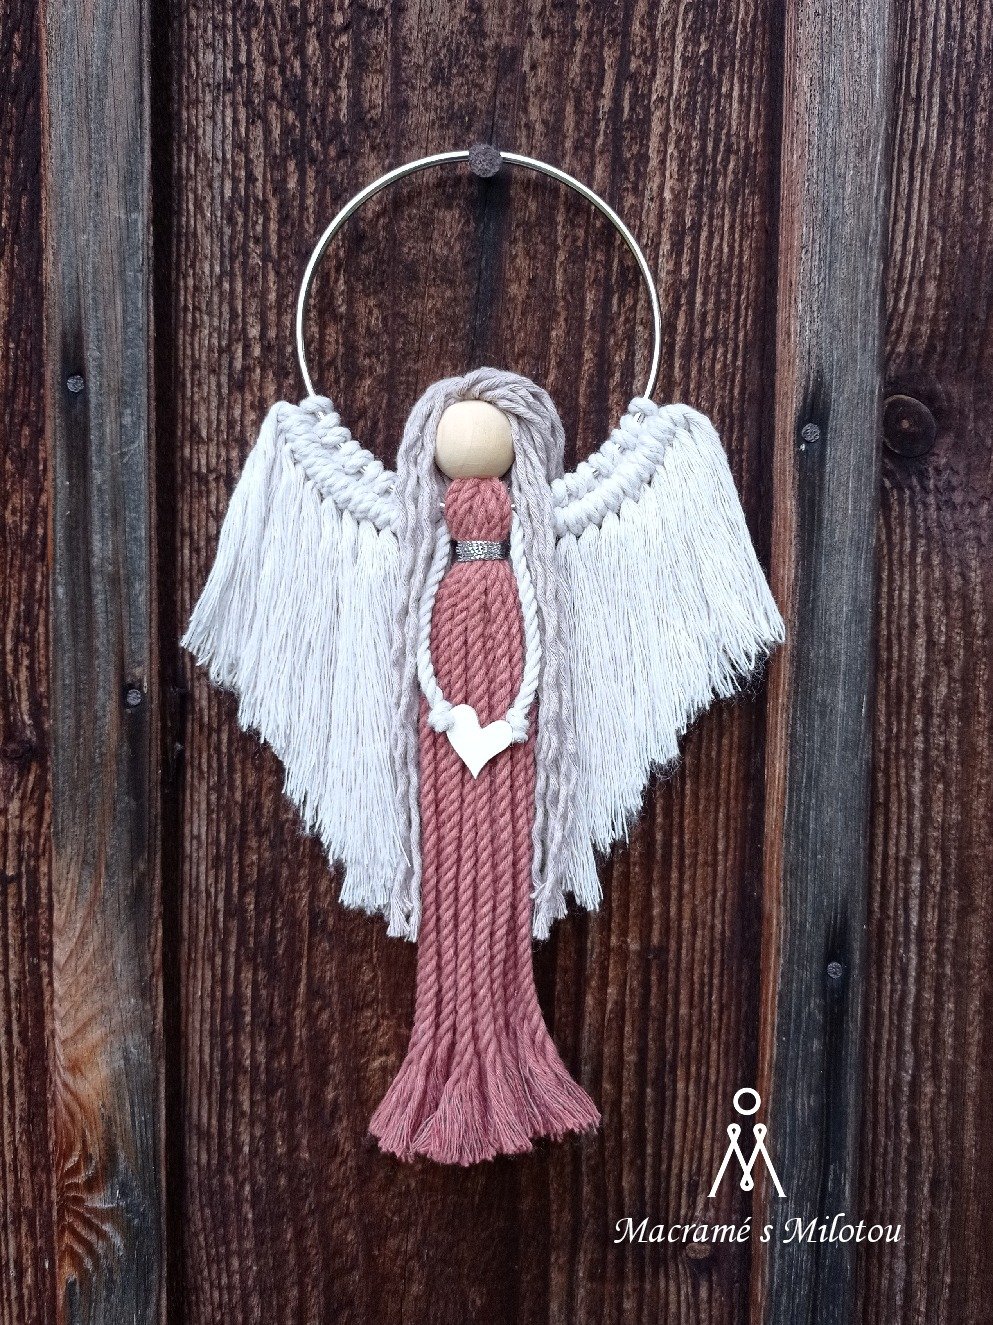 rozhovor: paní milota vyrábí anděly technikou macramé – každý kousek má svou duši